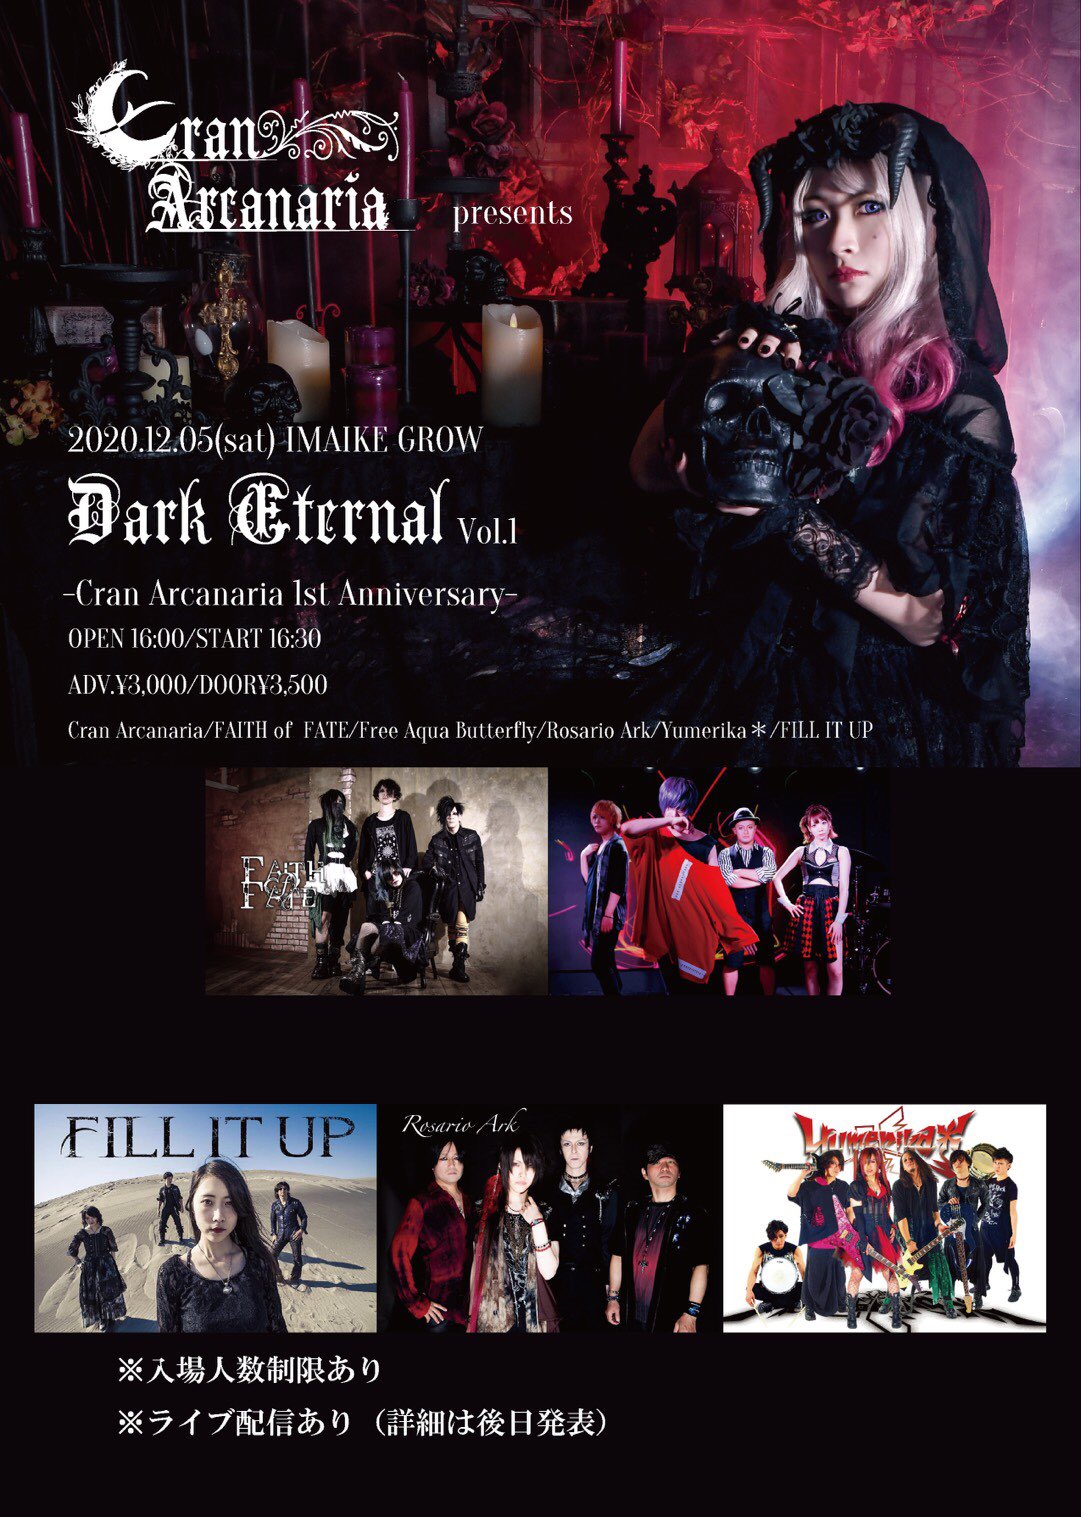 「DARK ETERNAL Vol.1」-Cran Arcanaria 1st Anniversary-